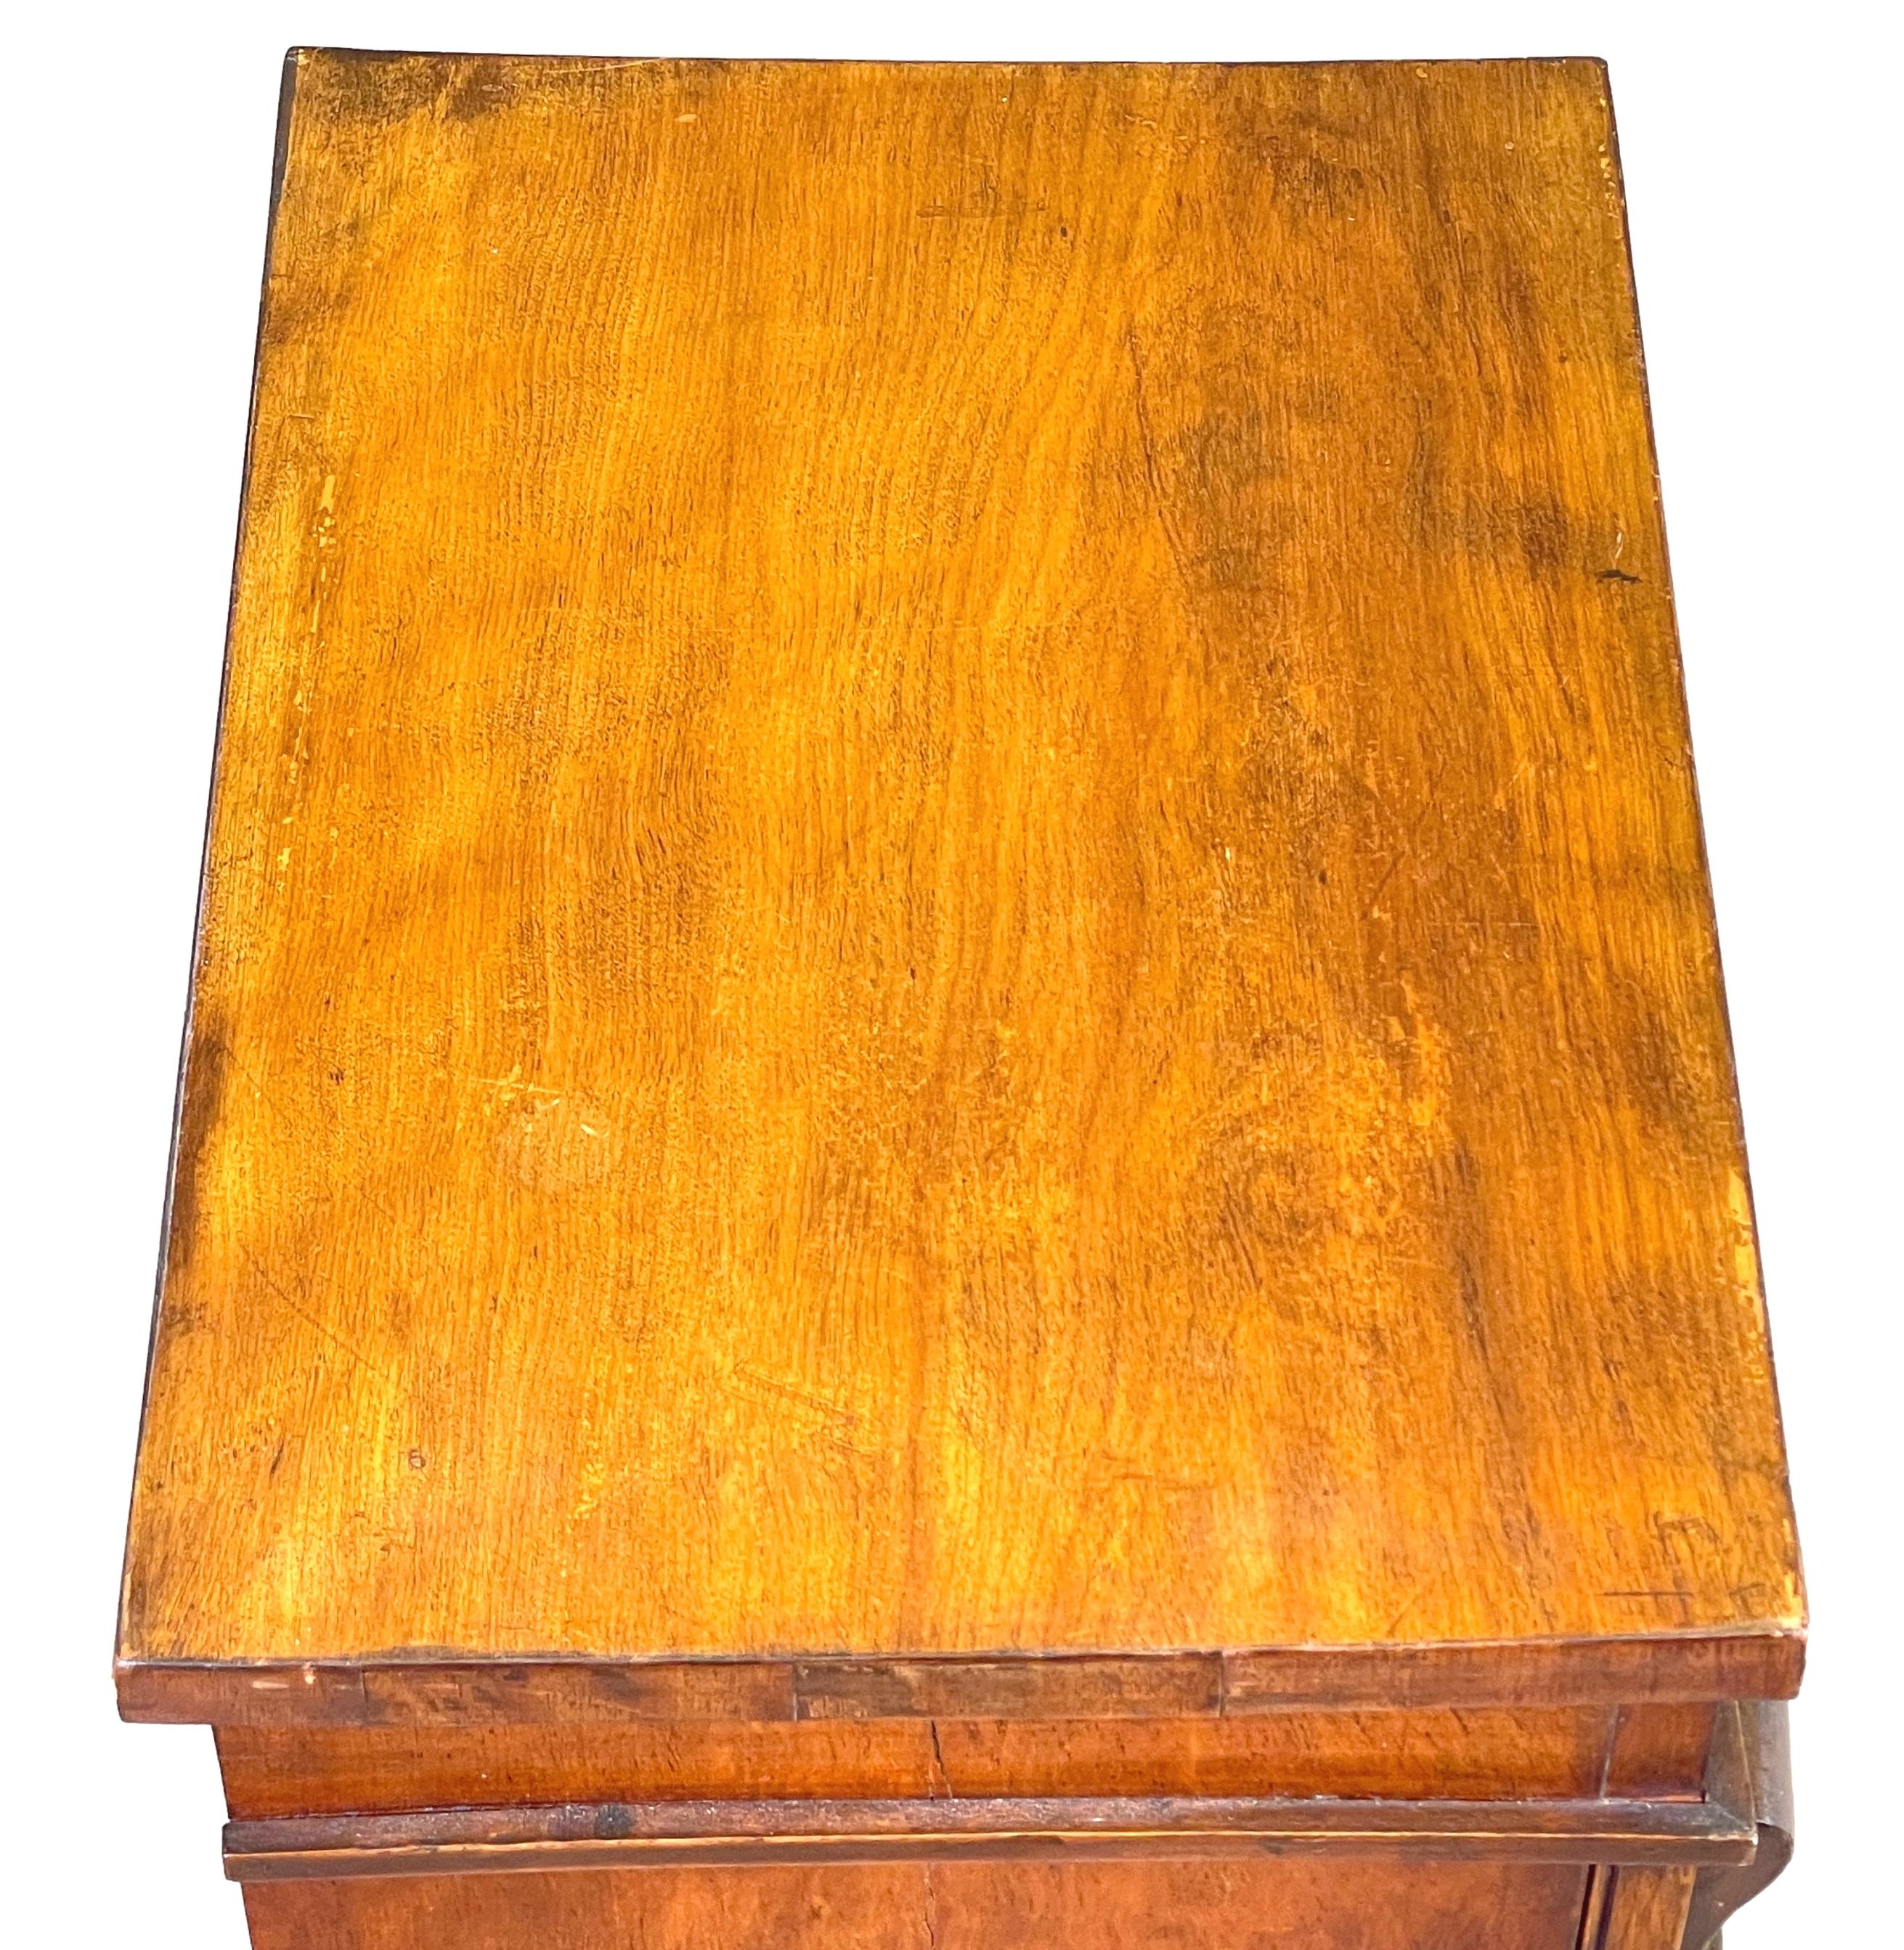 Eine sehr gute Qualität Mitte des 19. Jahrhunderts Satinbirch Holz, Kinder Größe Wellington Brust, mit acht Schubladen mit original gedrehten Holzknöpfen, durch Locking Pilaster eingeschlossen.

Exemplare der typischen Wellington-Kommode in